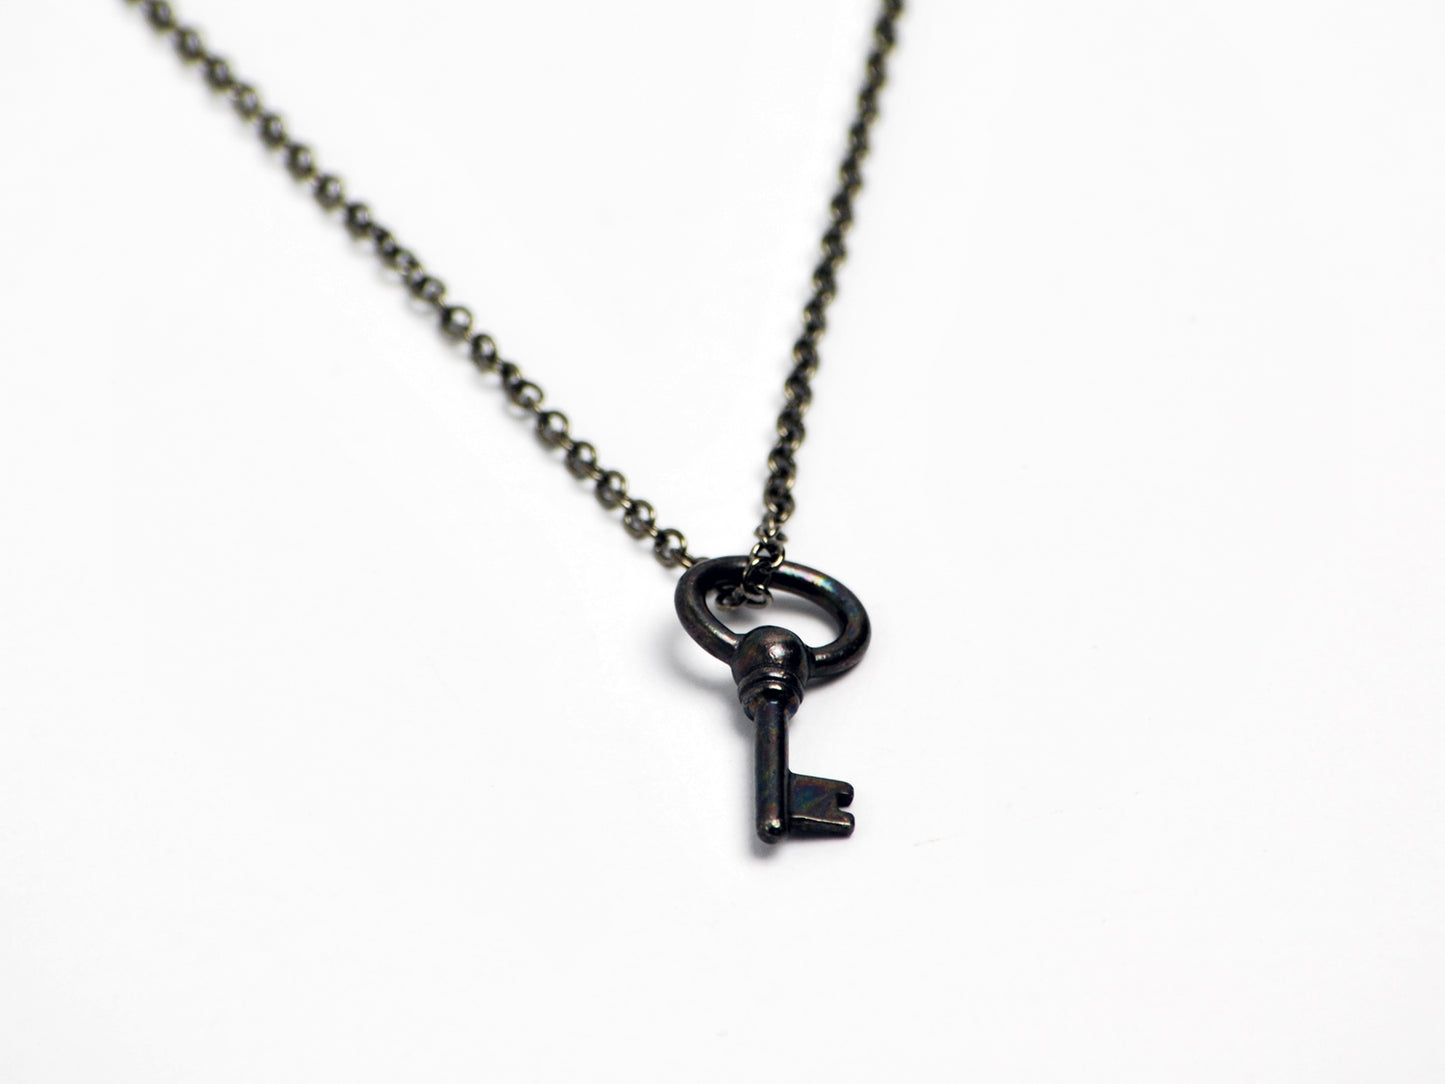 Oval Key Necklace in Gunmetal